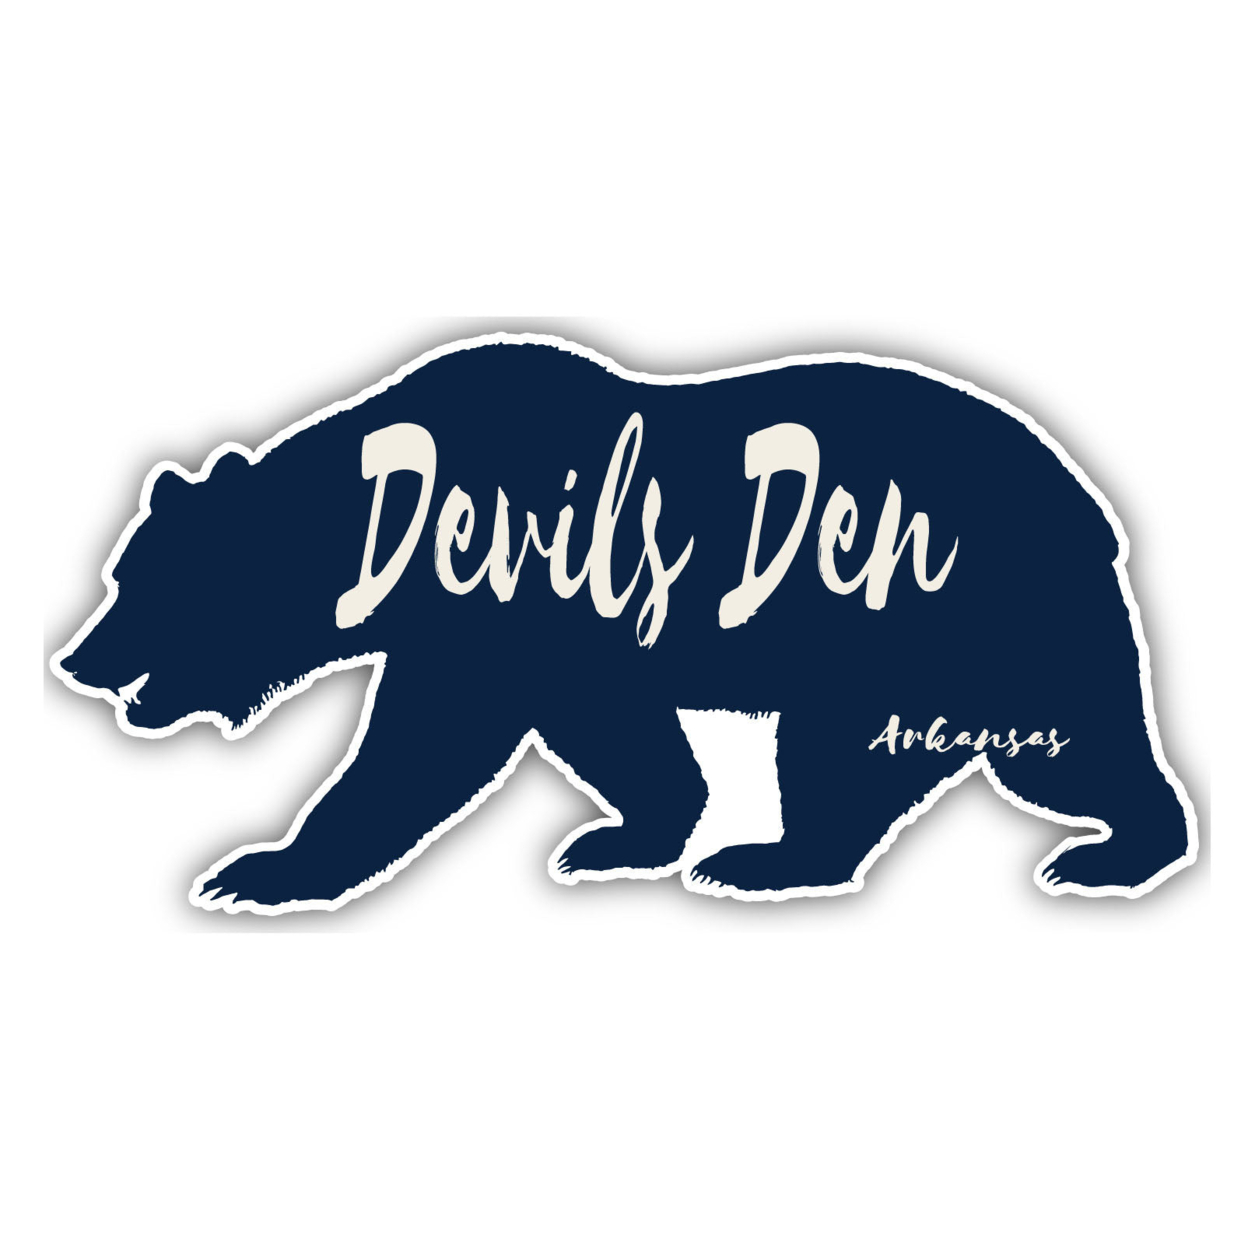 Devils Den Arkansas Souvenir Decorative Stickers (Choose Theme And Size) - 4-Pack, 12-Inch, Bear